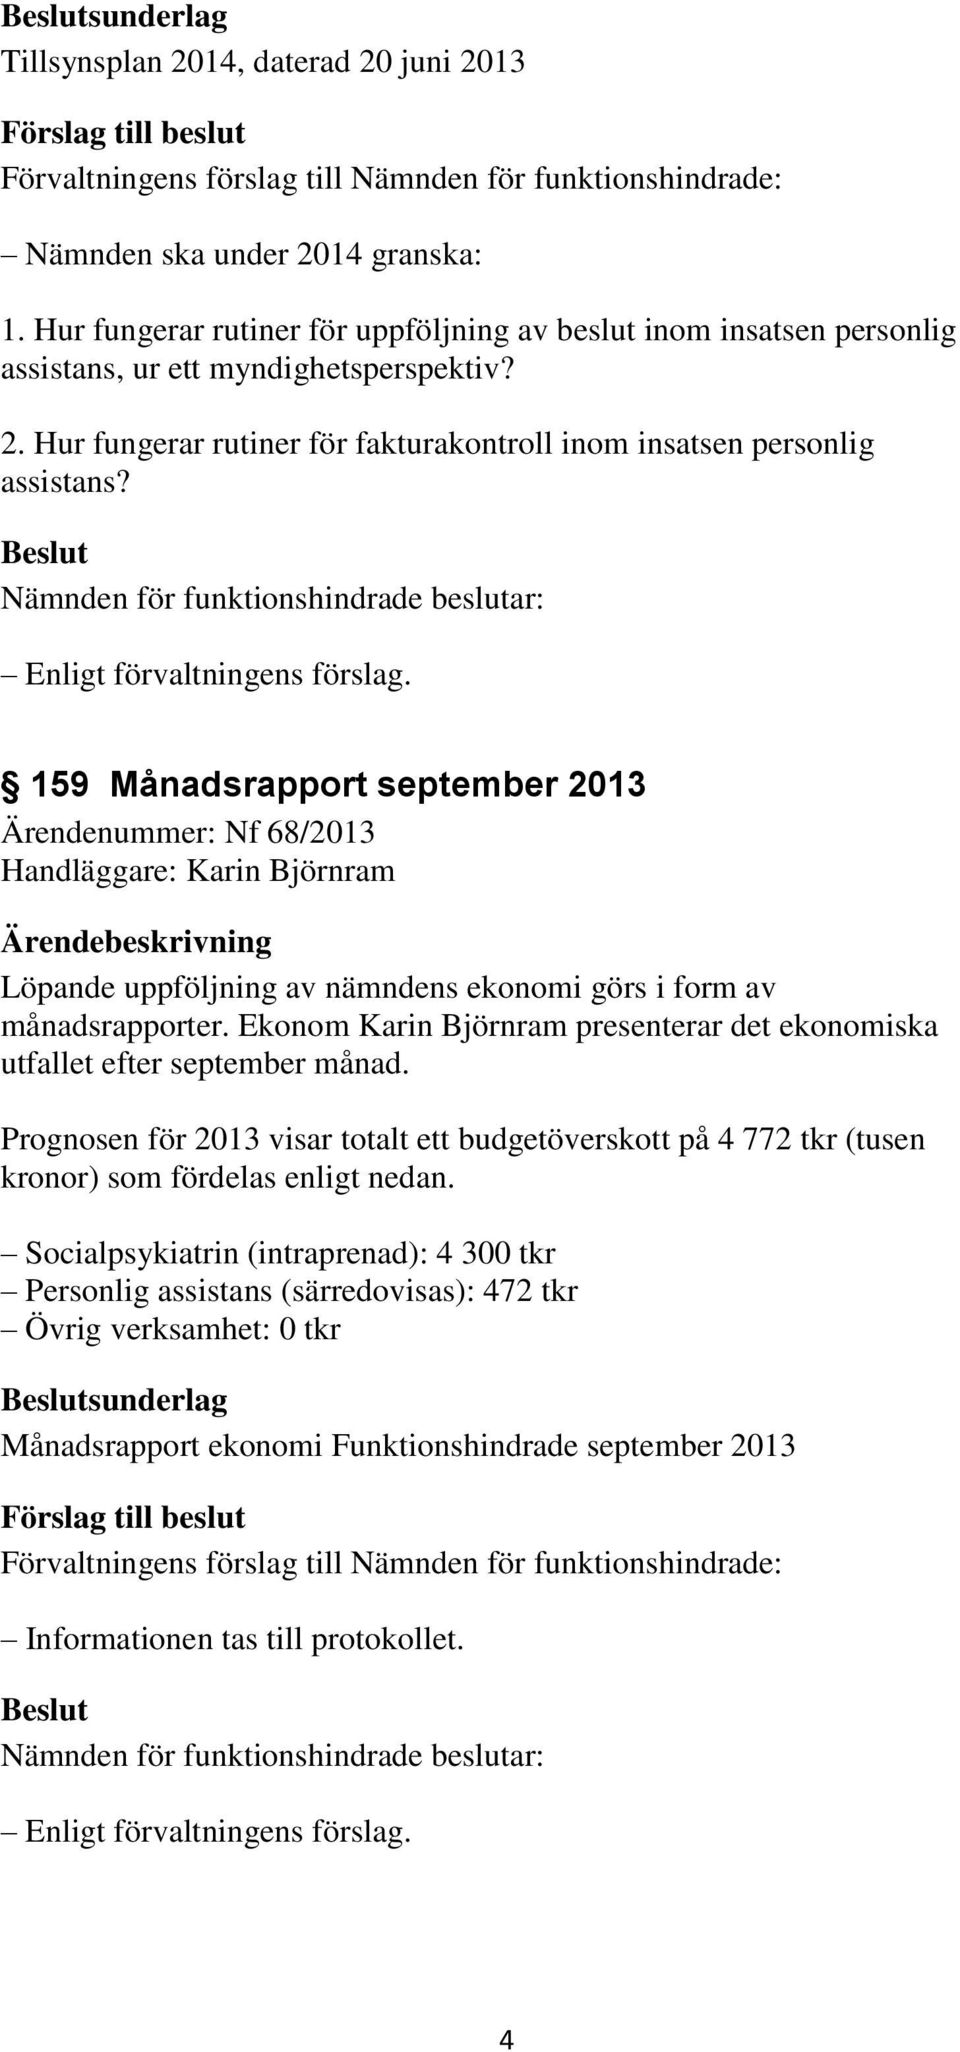 Ekonom Karin Björnram presenterar det ekonomiska utfallet efter september månad. Prognosen för 2013 visar totalt ett budgetöverskott på 4 772 tkr (tusen kronor) som fördelas enligt nedan.